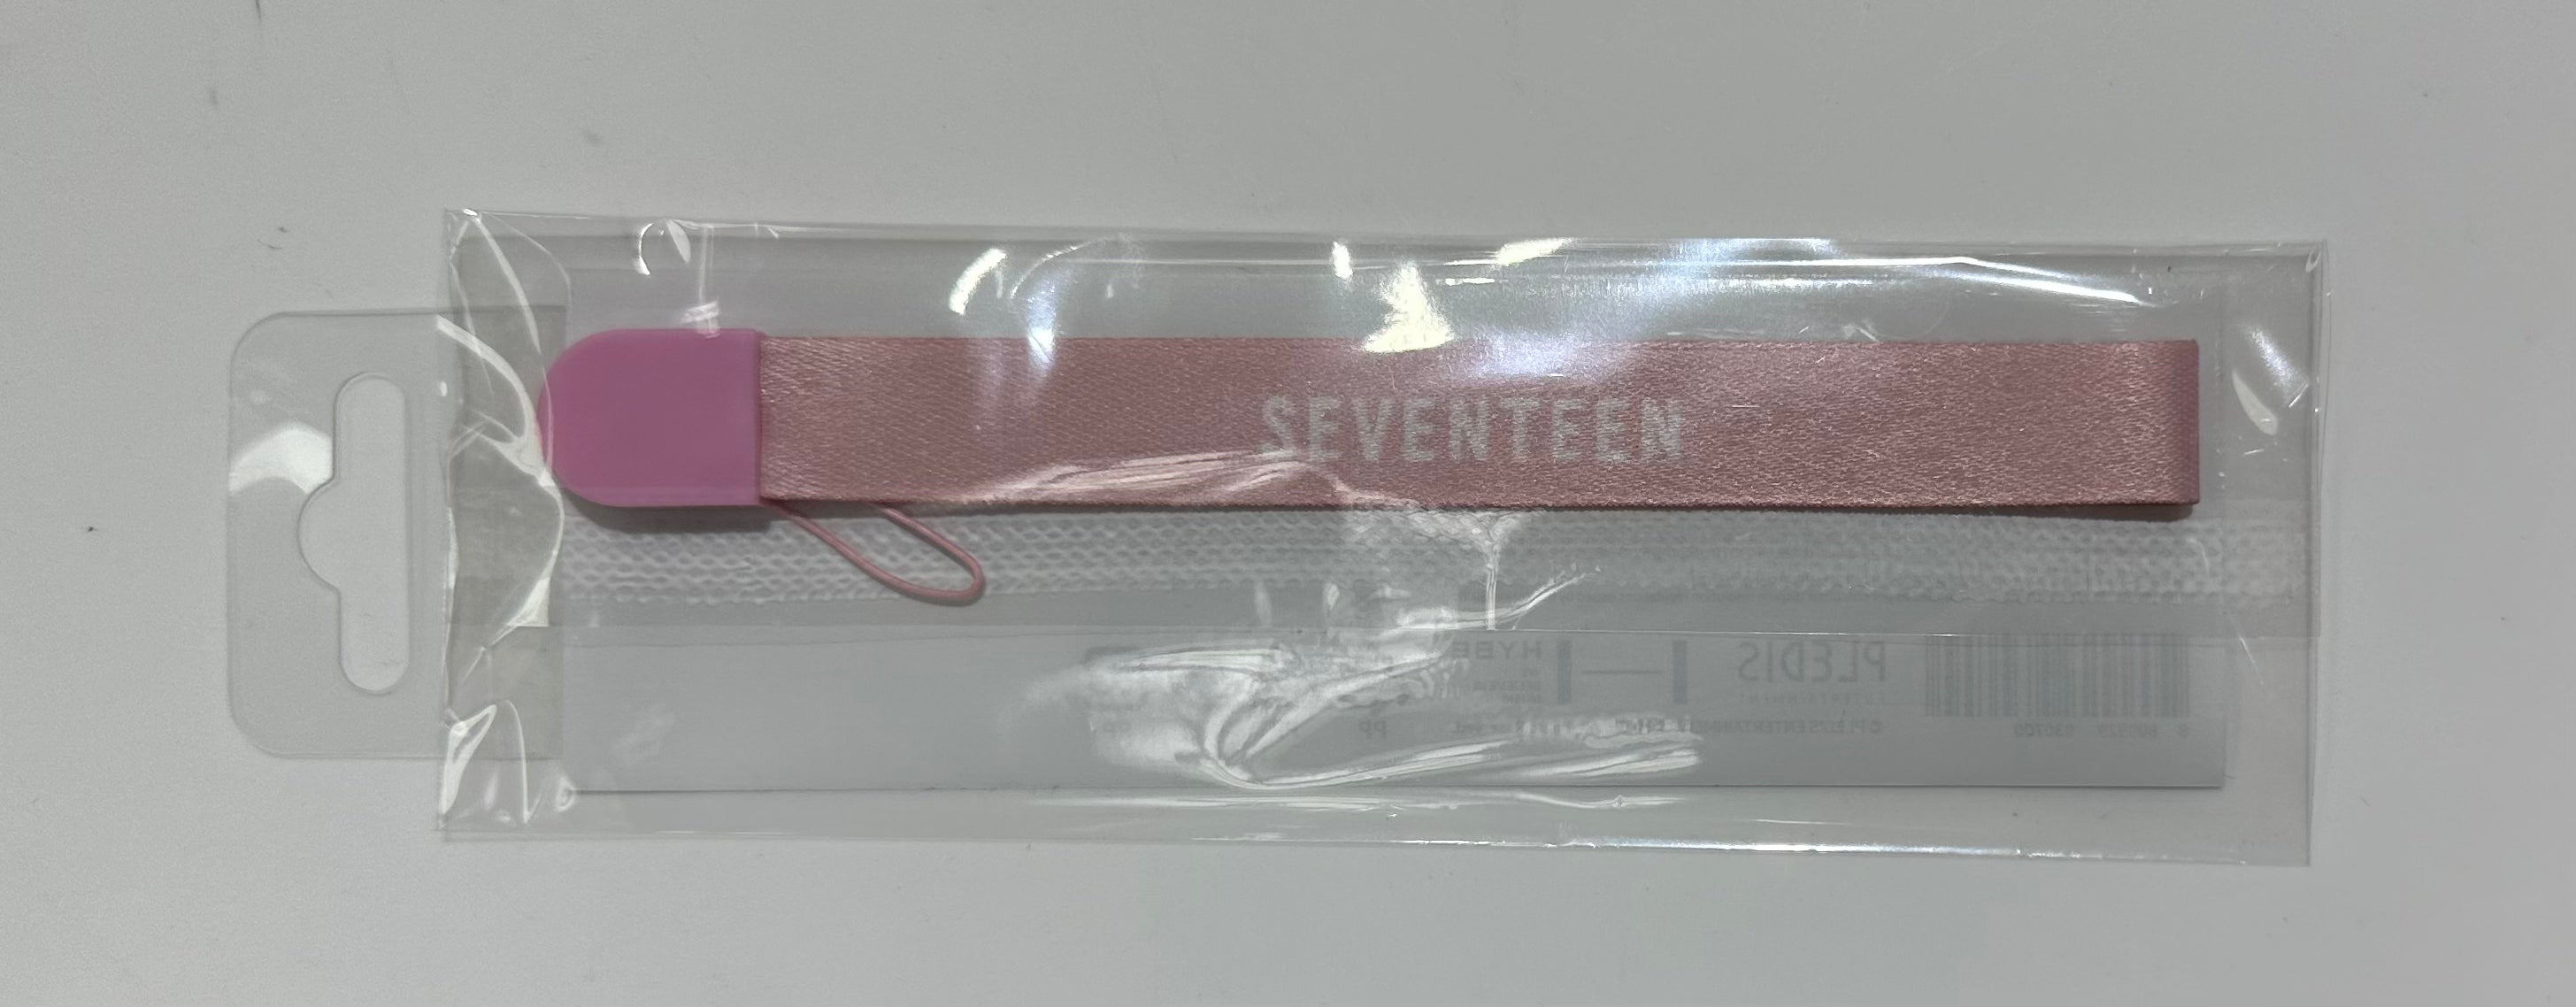 SEVENTEEN] Official Lightstick Version 3 Strap – krmerch